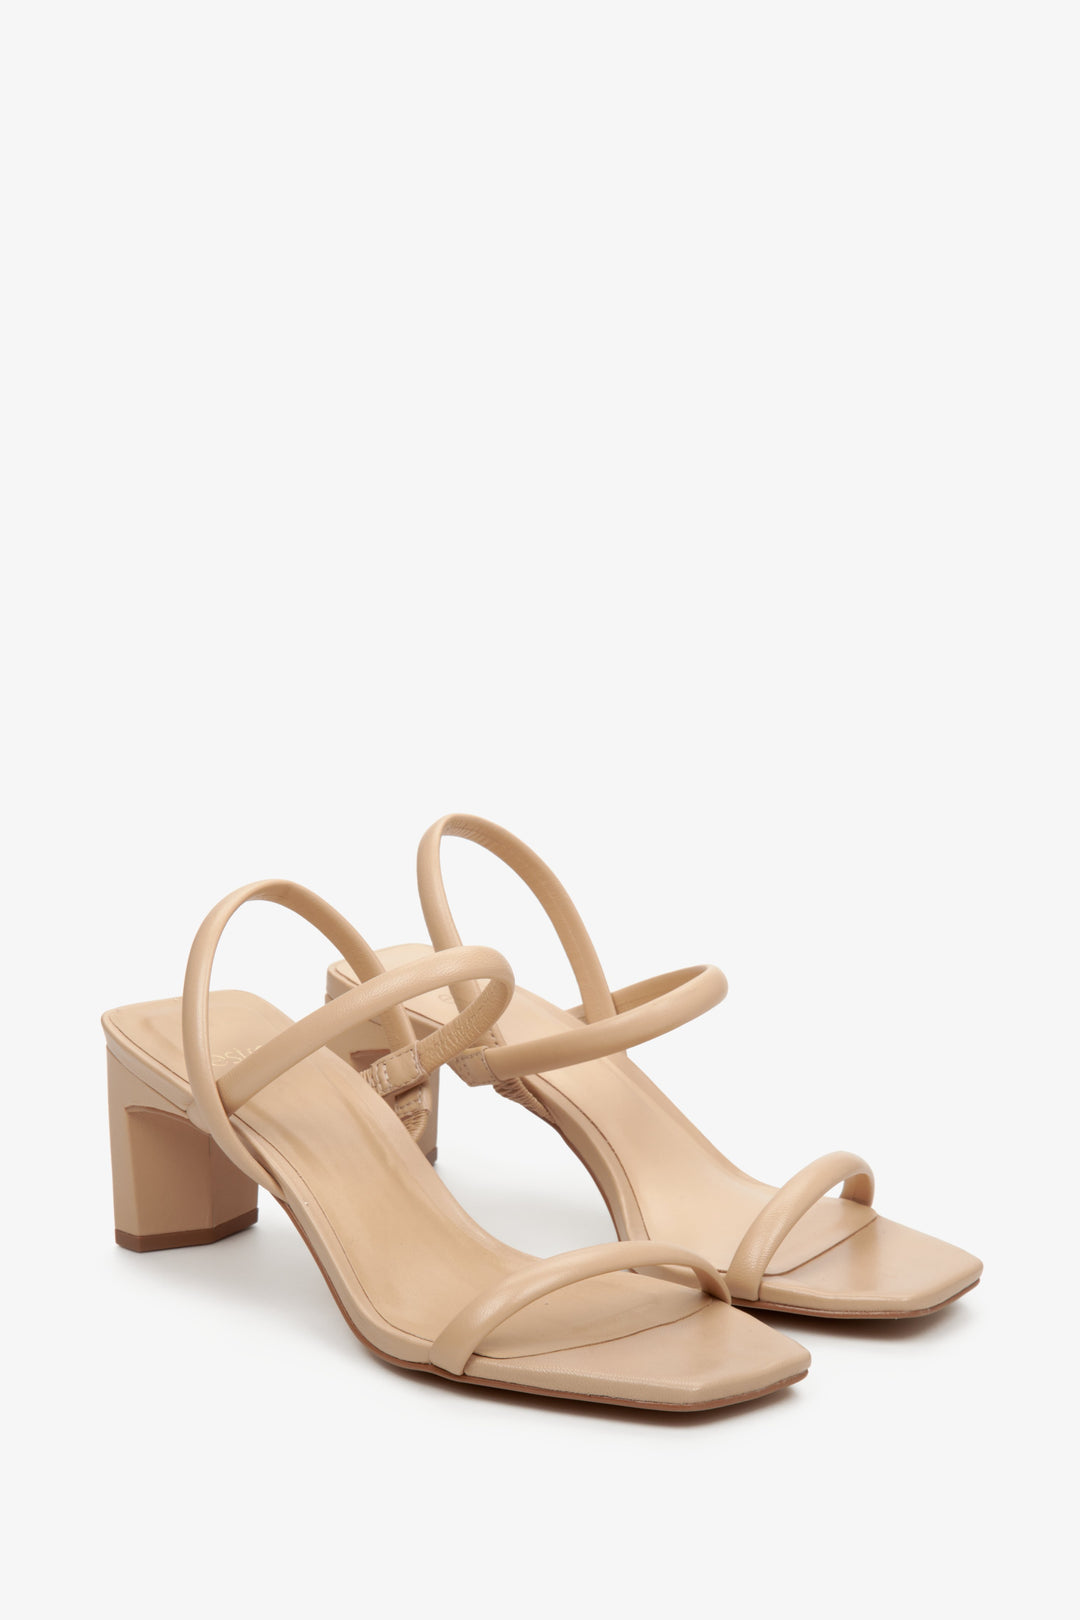 Comfortable, leather women's block-heel sandals in beige by Estro.